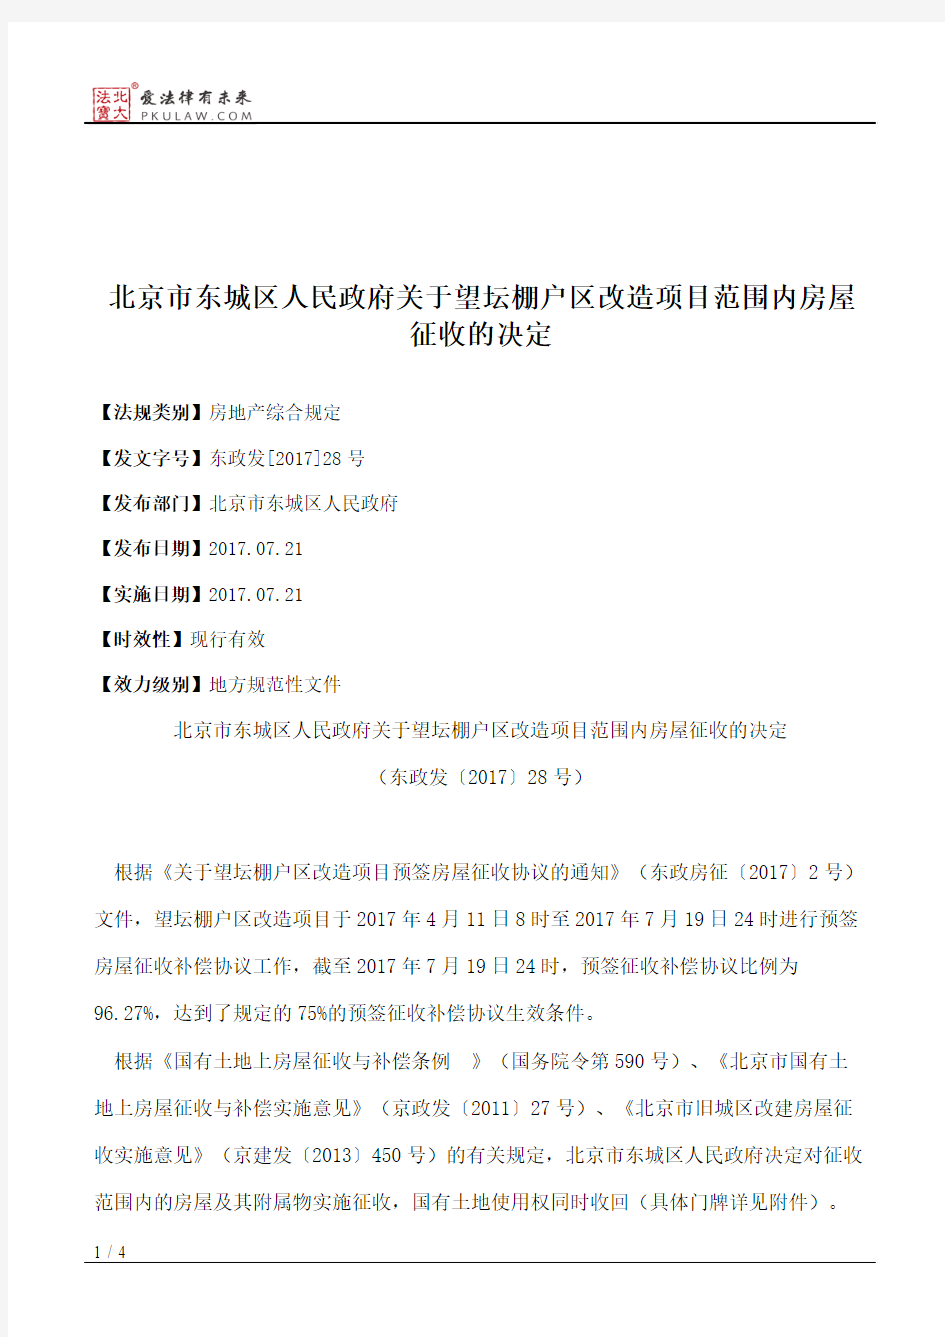 北京市东城区人民政府关于望坛棚户区改造项目范围内房屋征收的决定